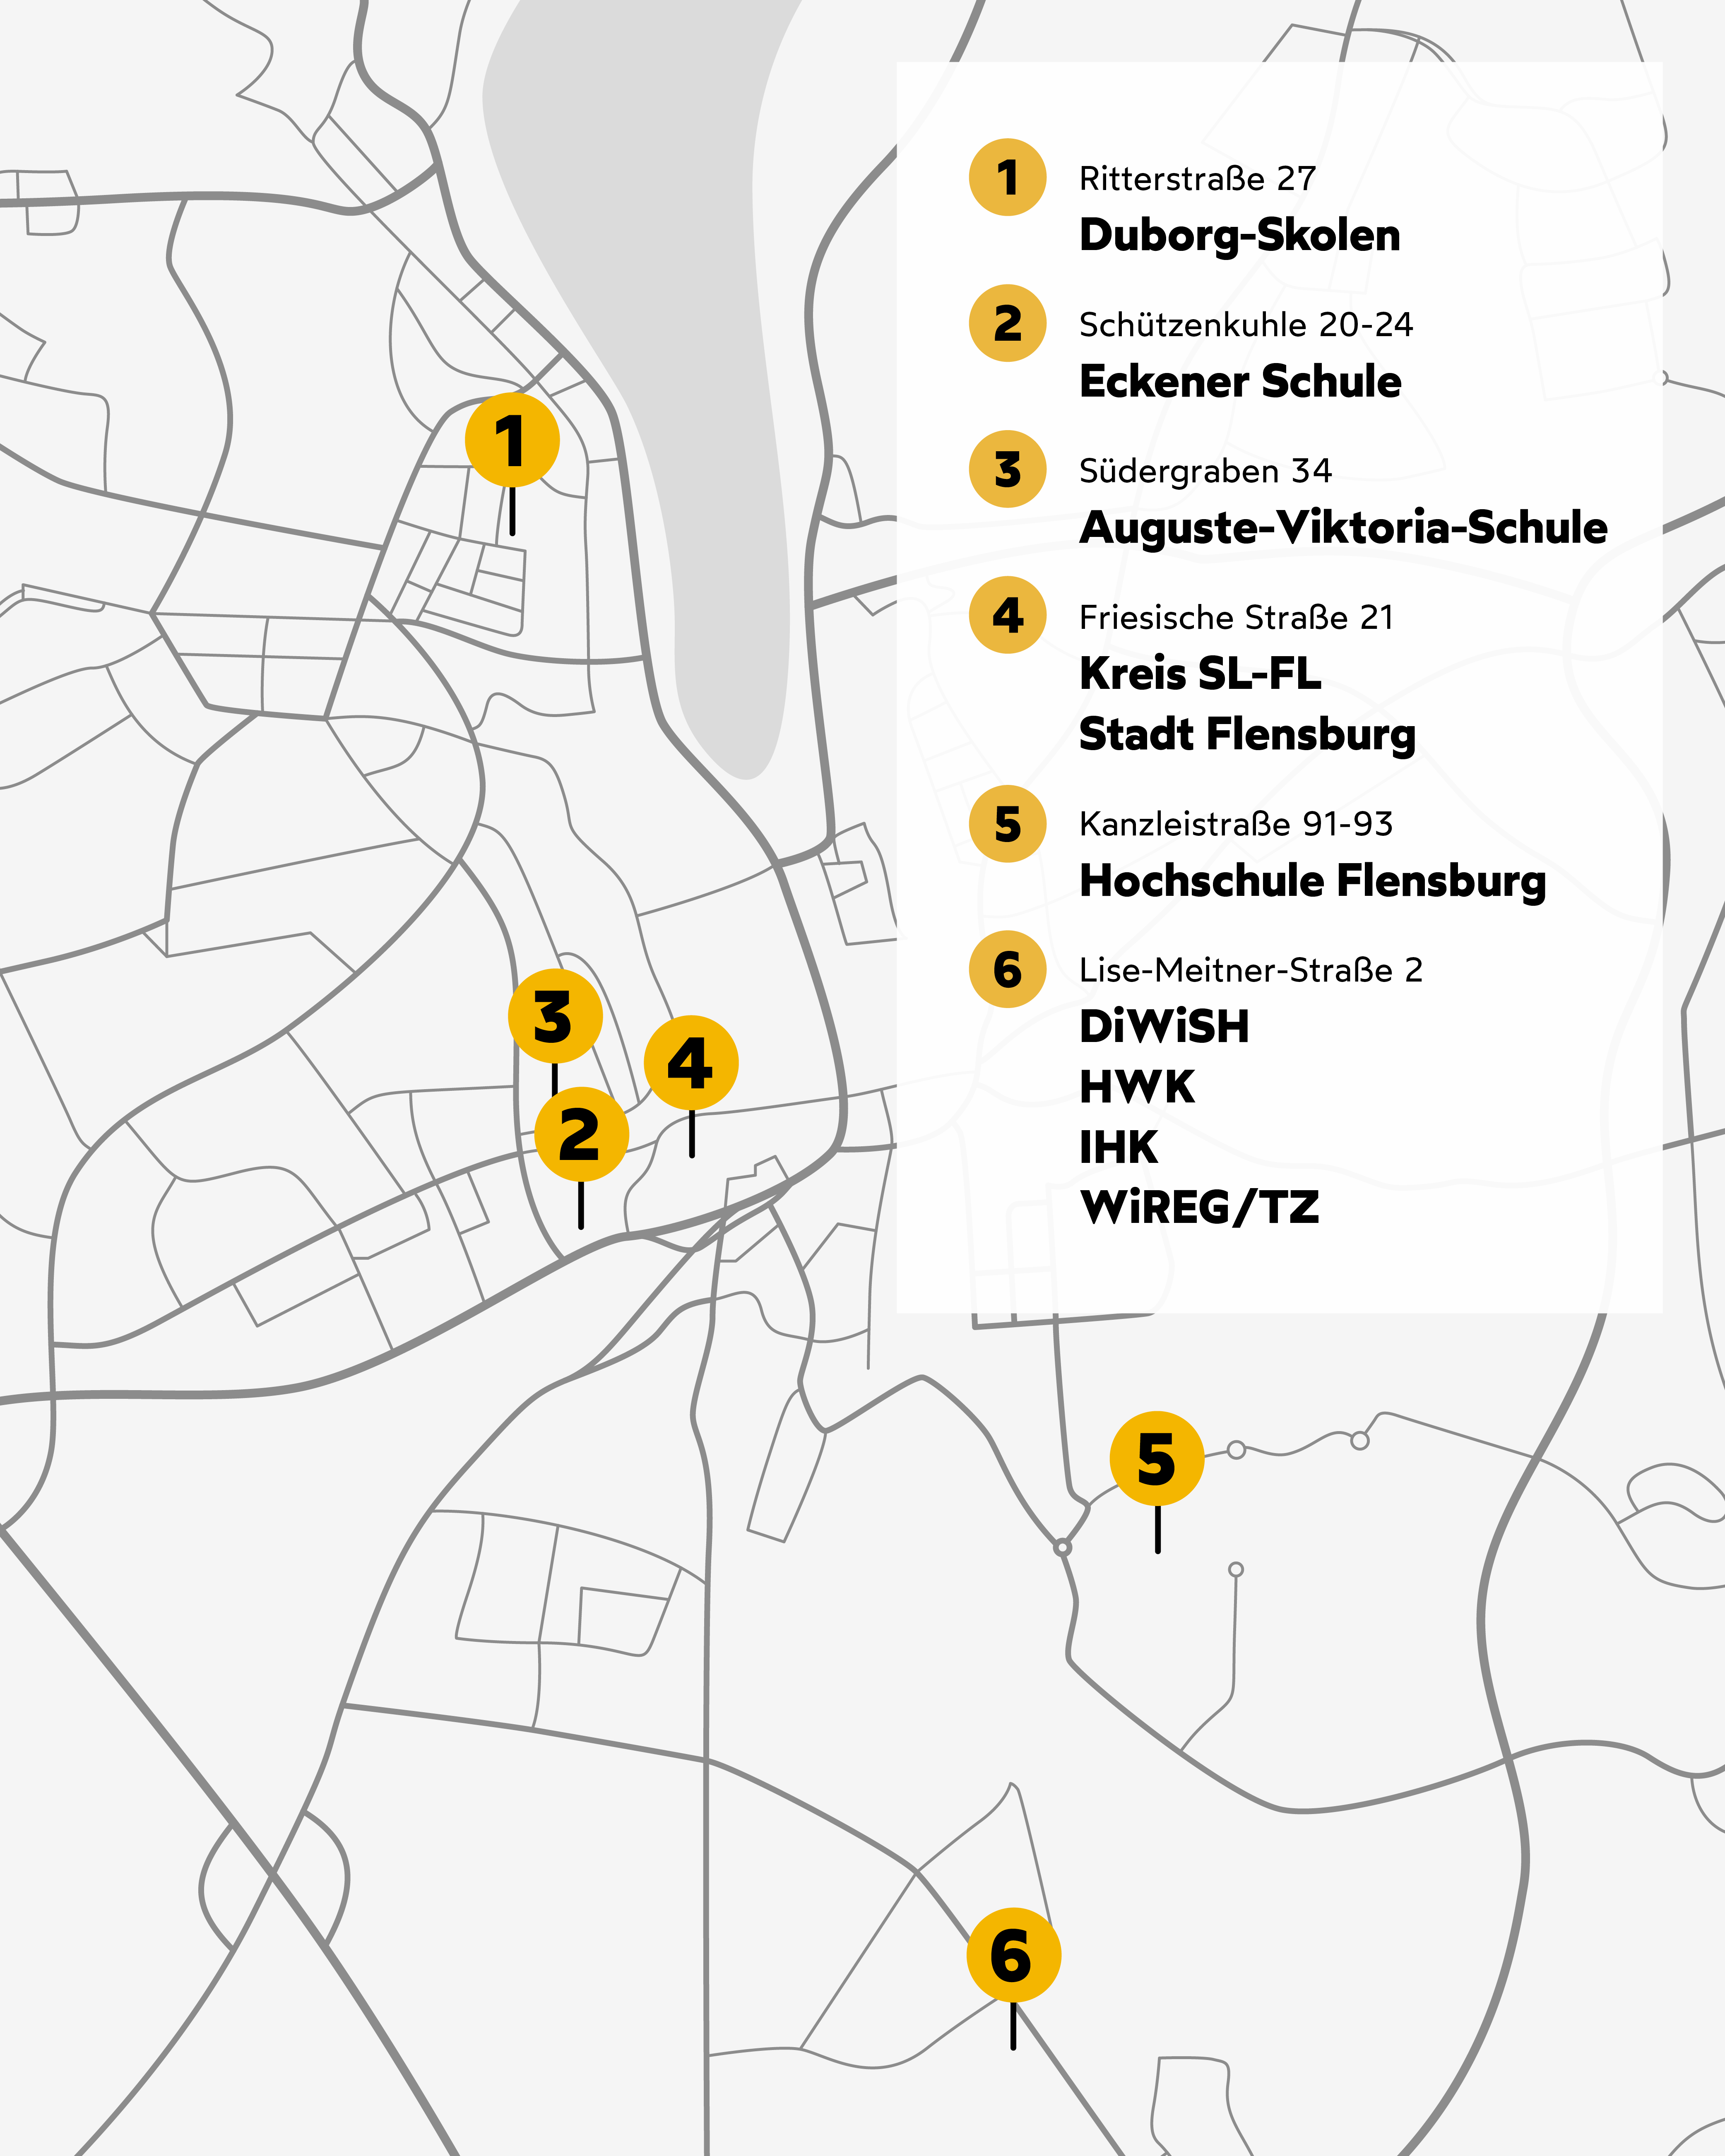 Karte von Flensburg mit verscheidenen Veranstaltungsorten.